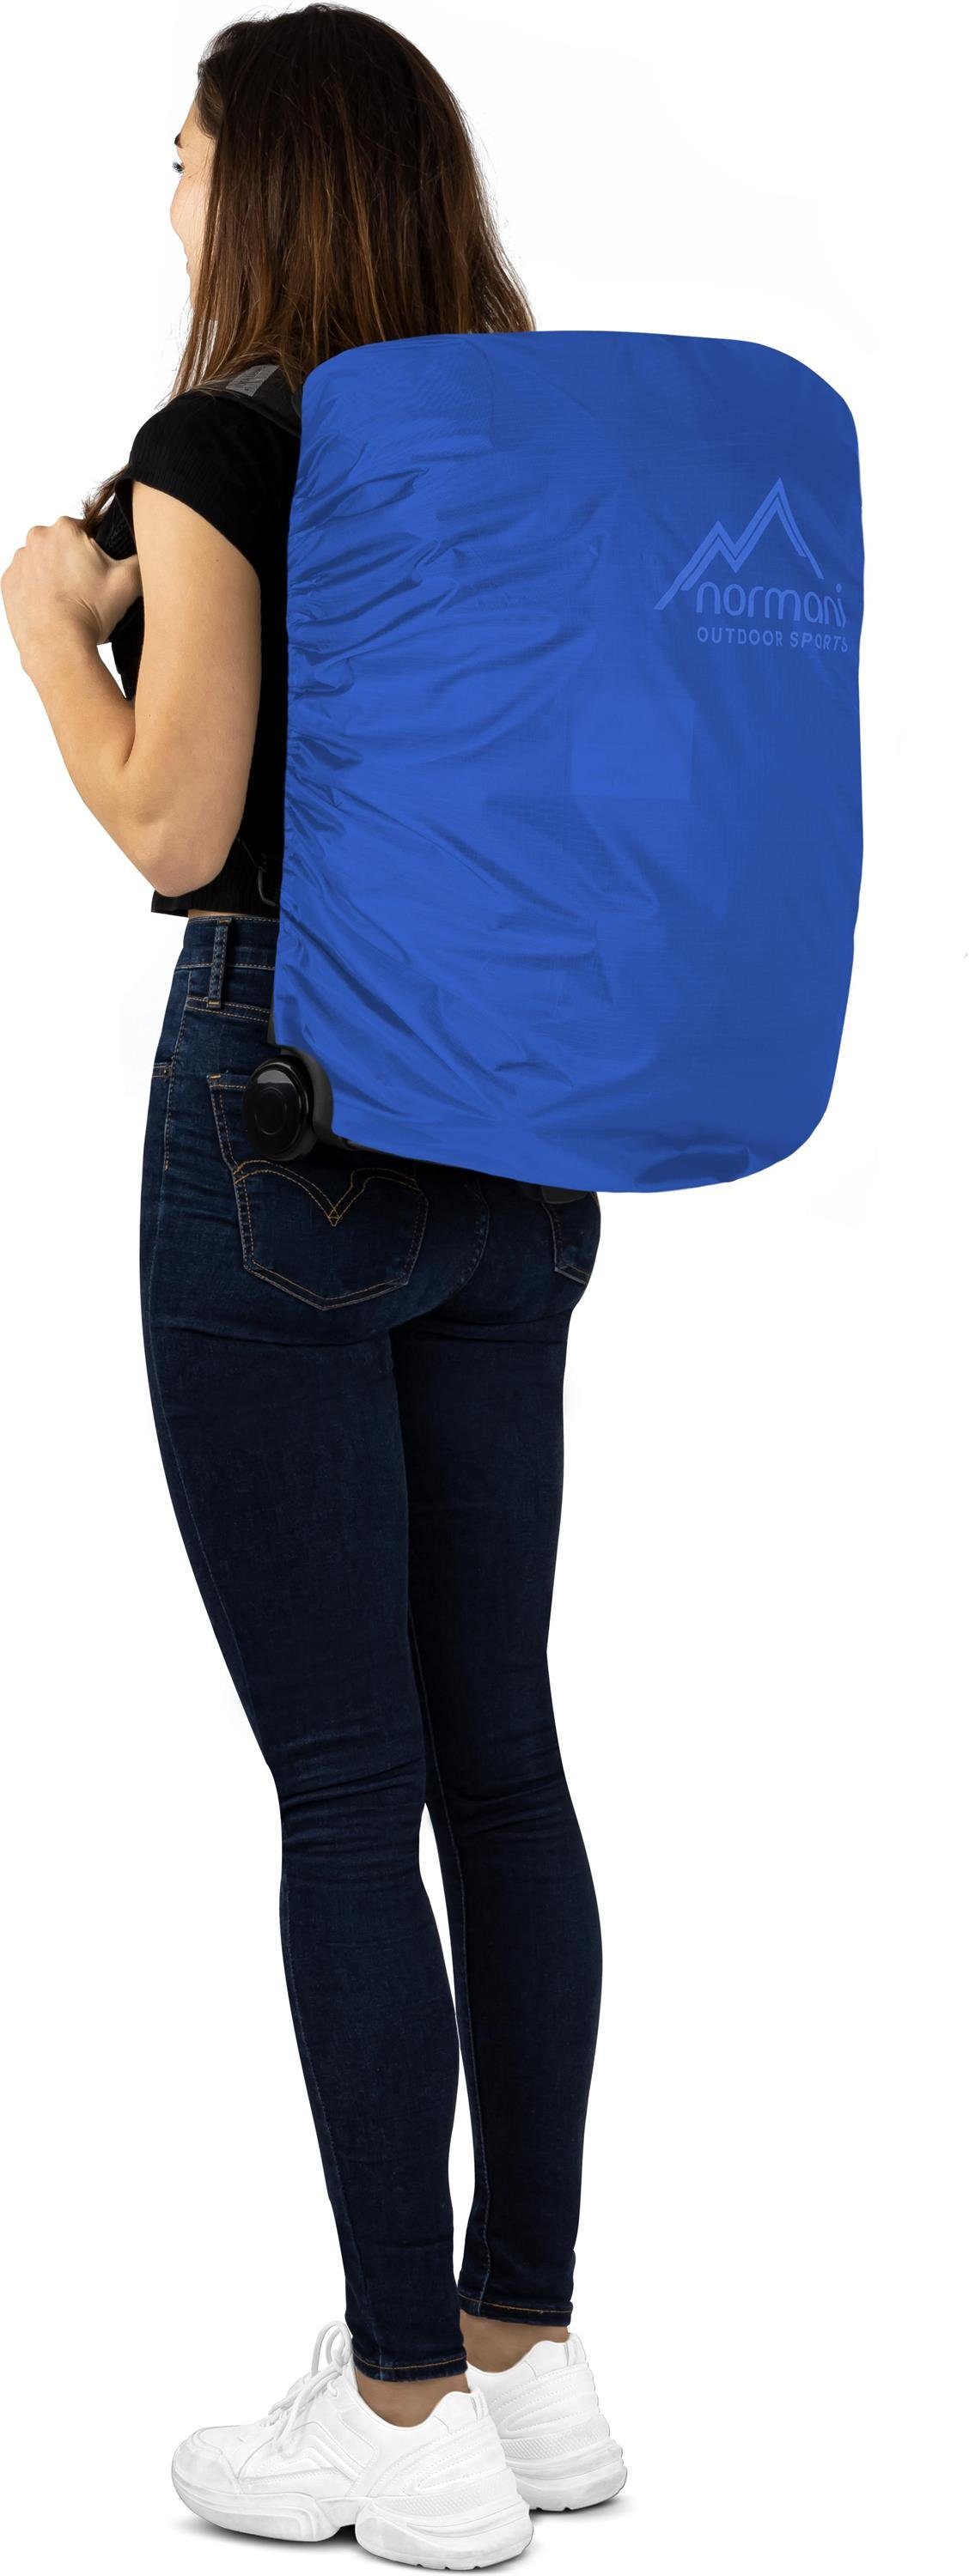 L 37 Regenüberzug, 3-in-1 Trolleyfunktion Reisetasche Blau und mit normani Rucksack Handgepäckgröße Reisetasche in